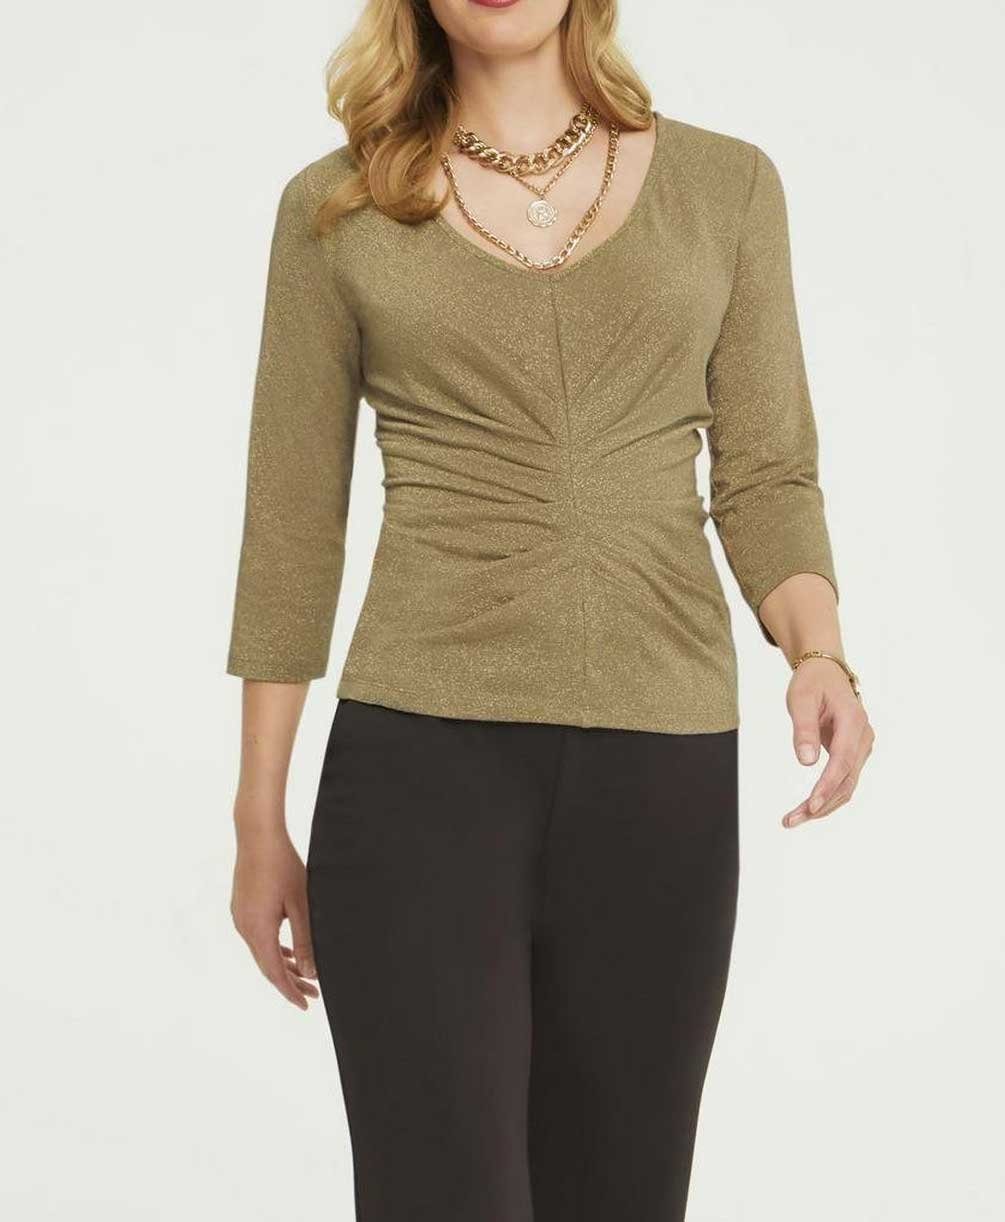 Ashley Brooke Damen goldfarben ASHLEY V-Shirt heine by Designer-Shirt, BROOKE